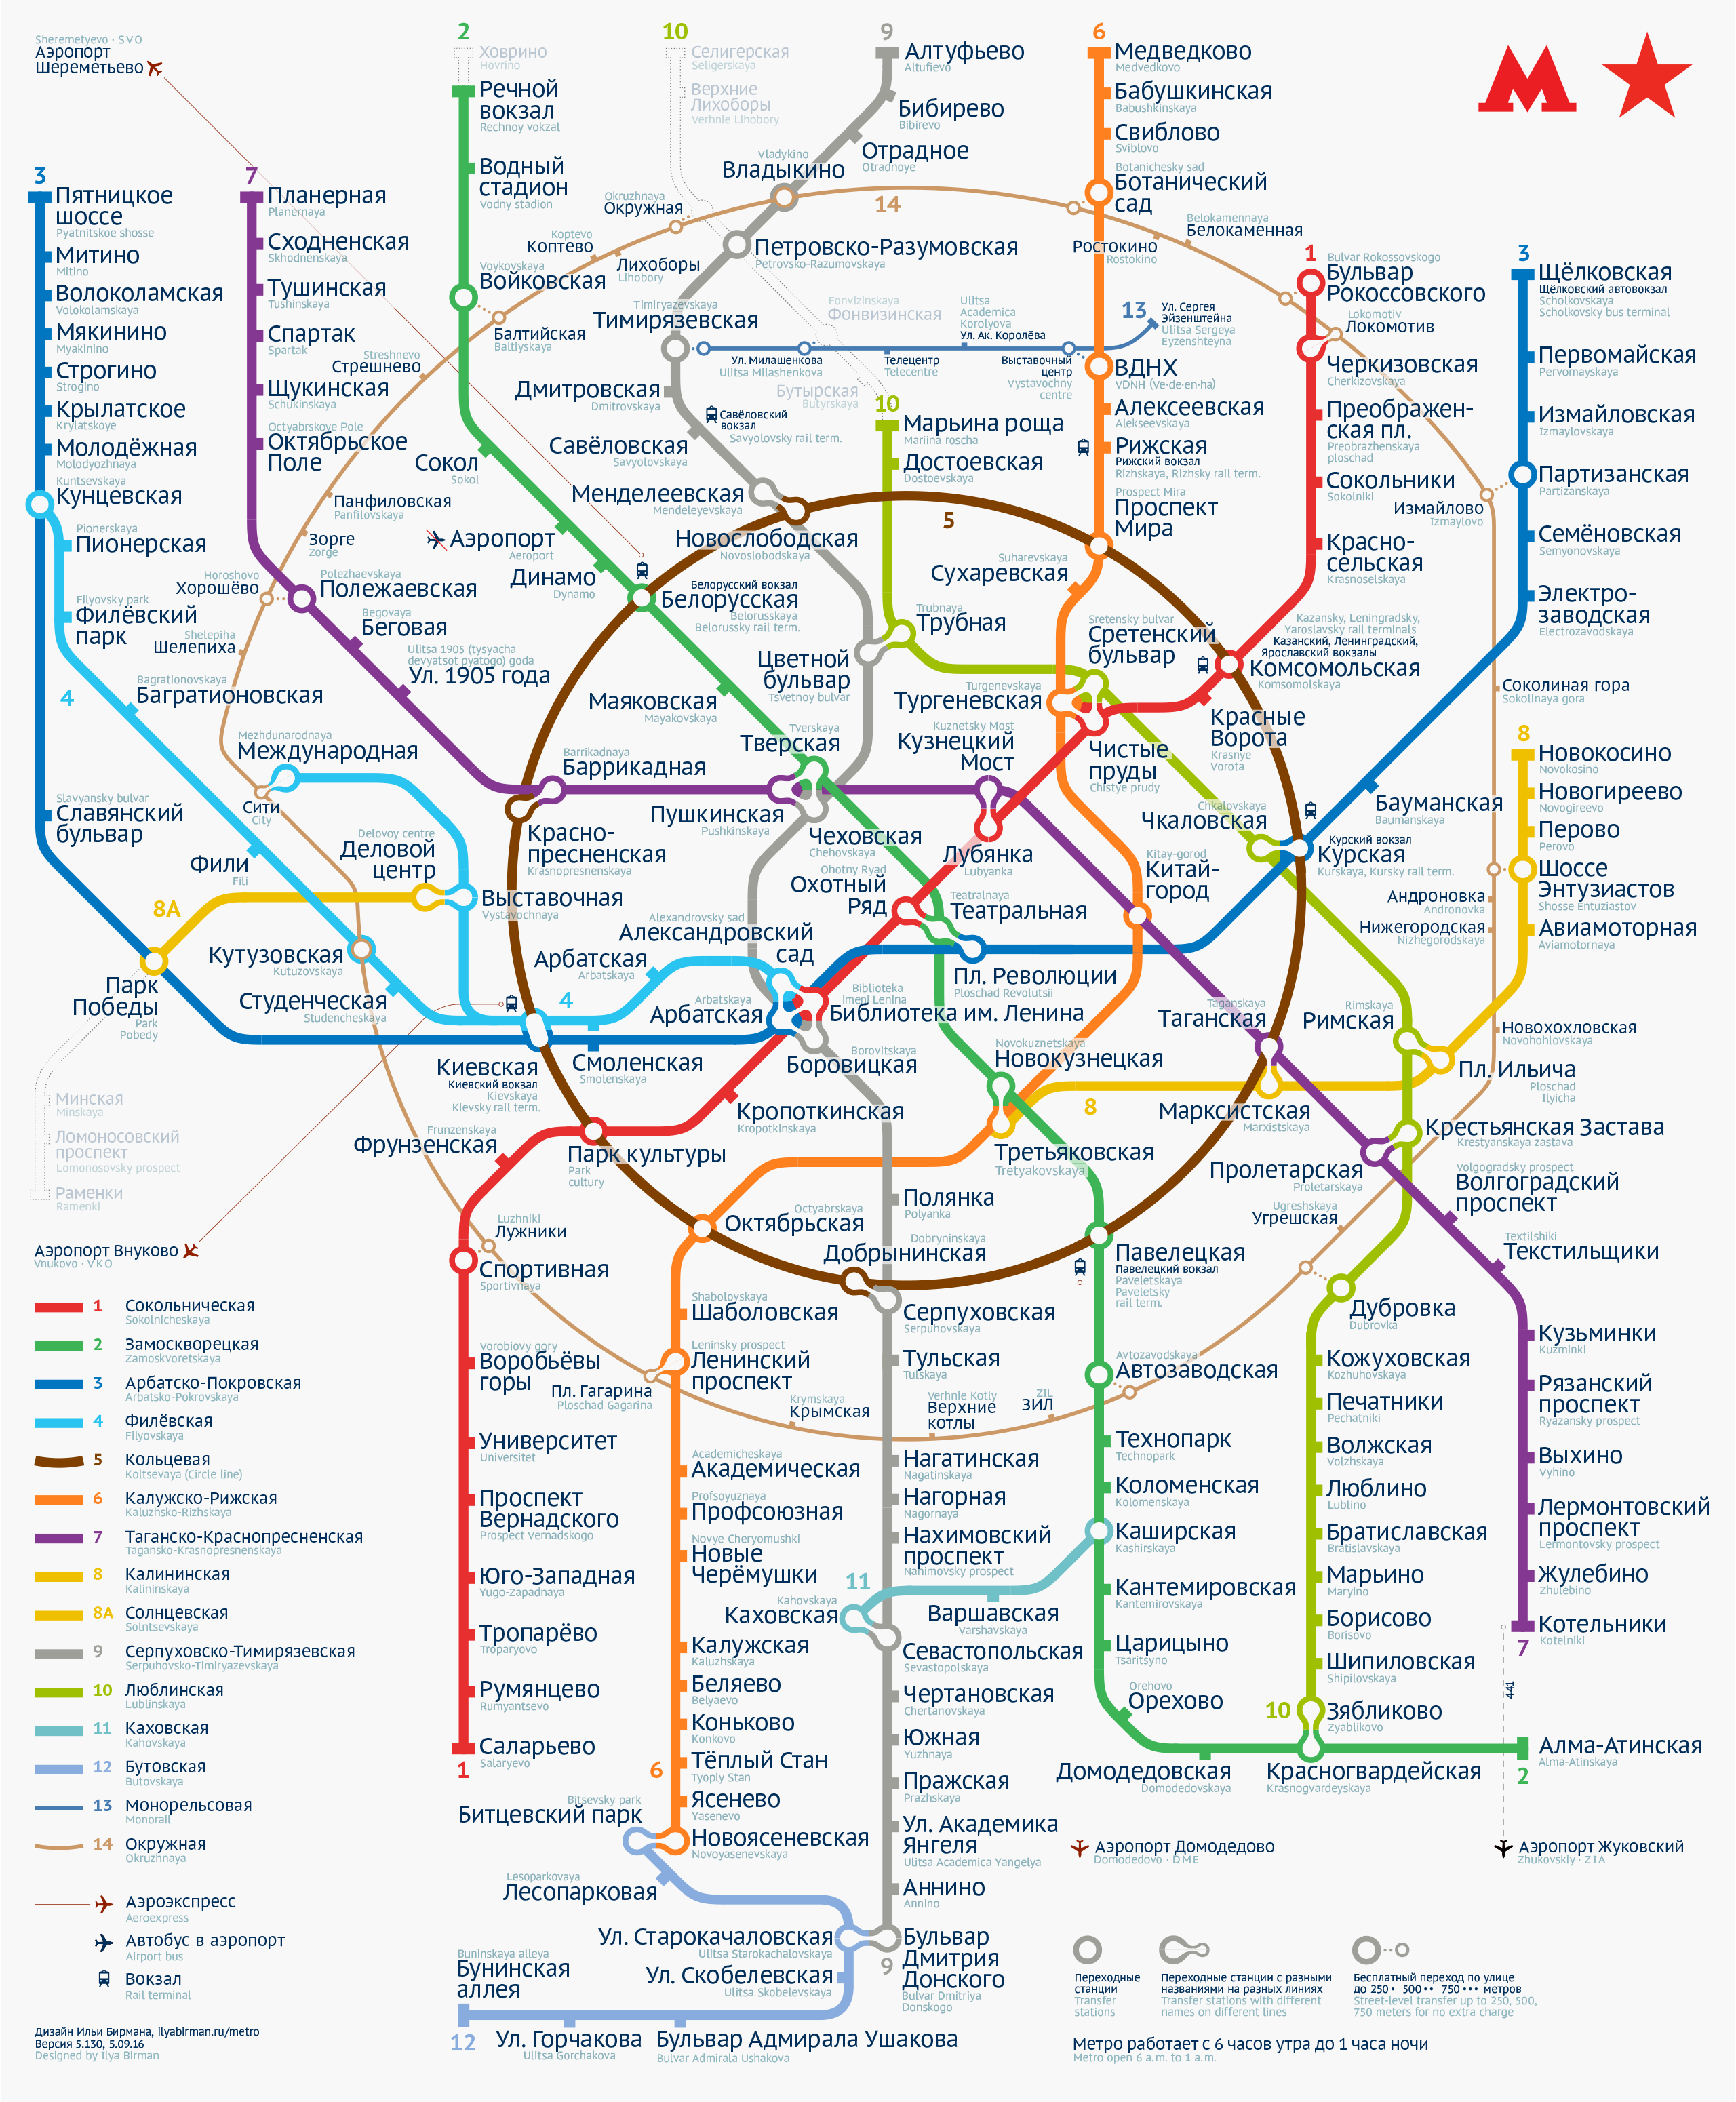 Пятая версия схемы московского метро